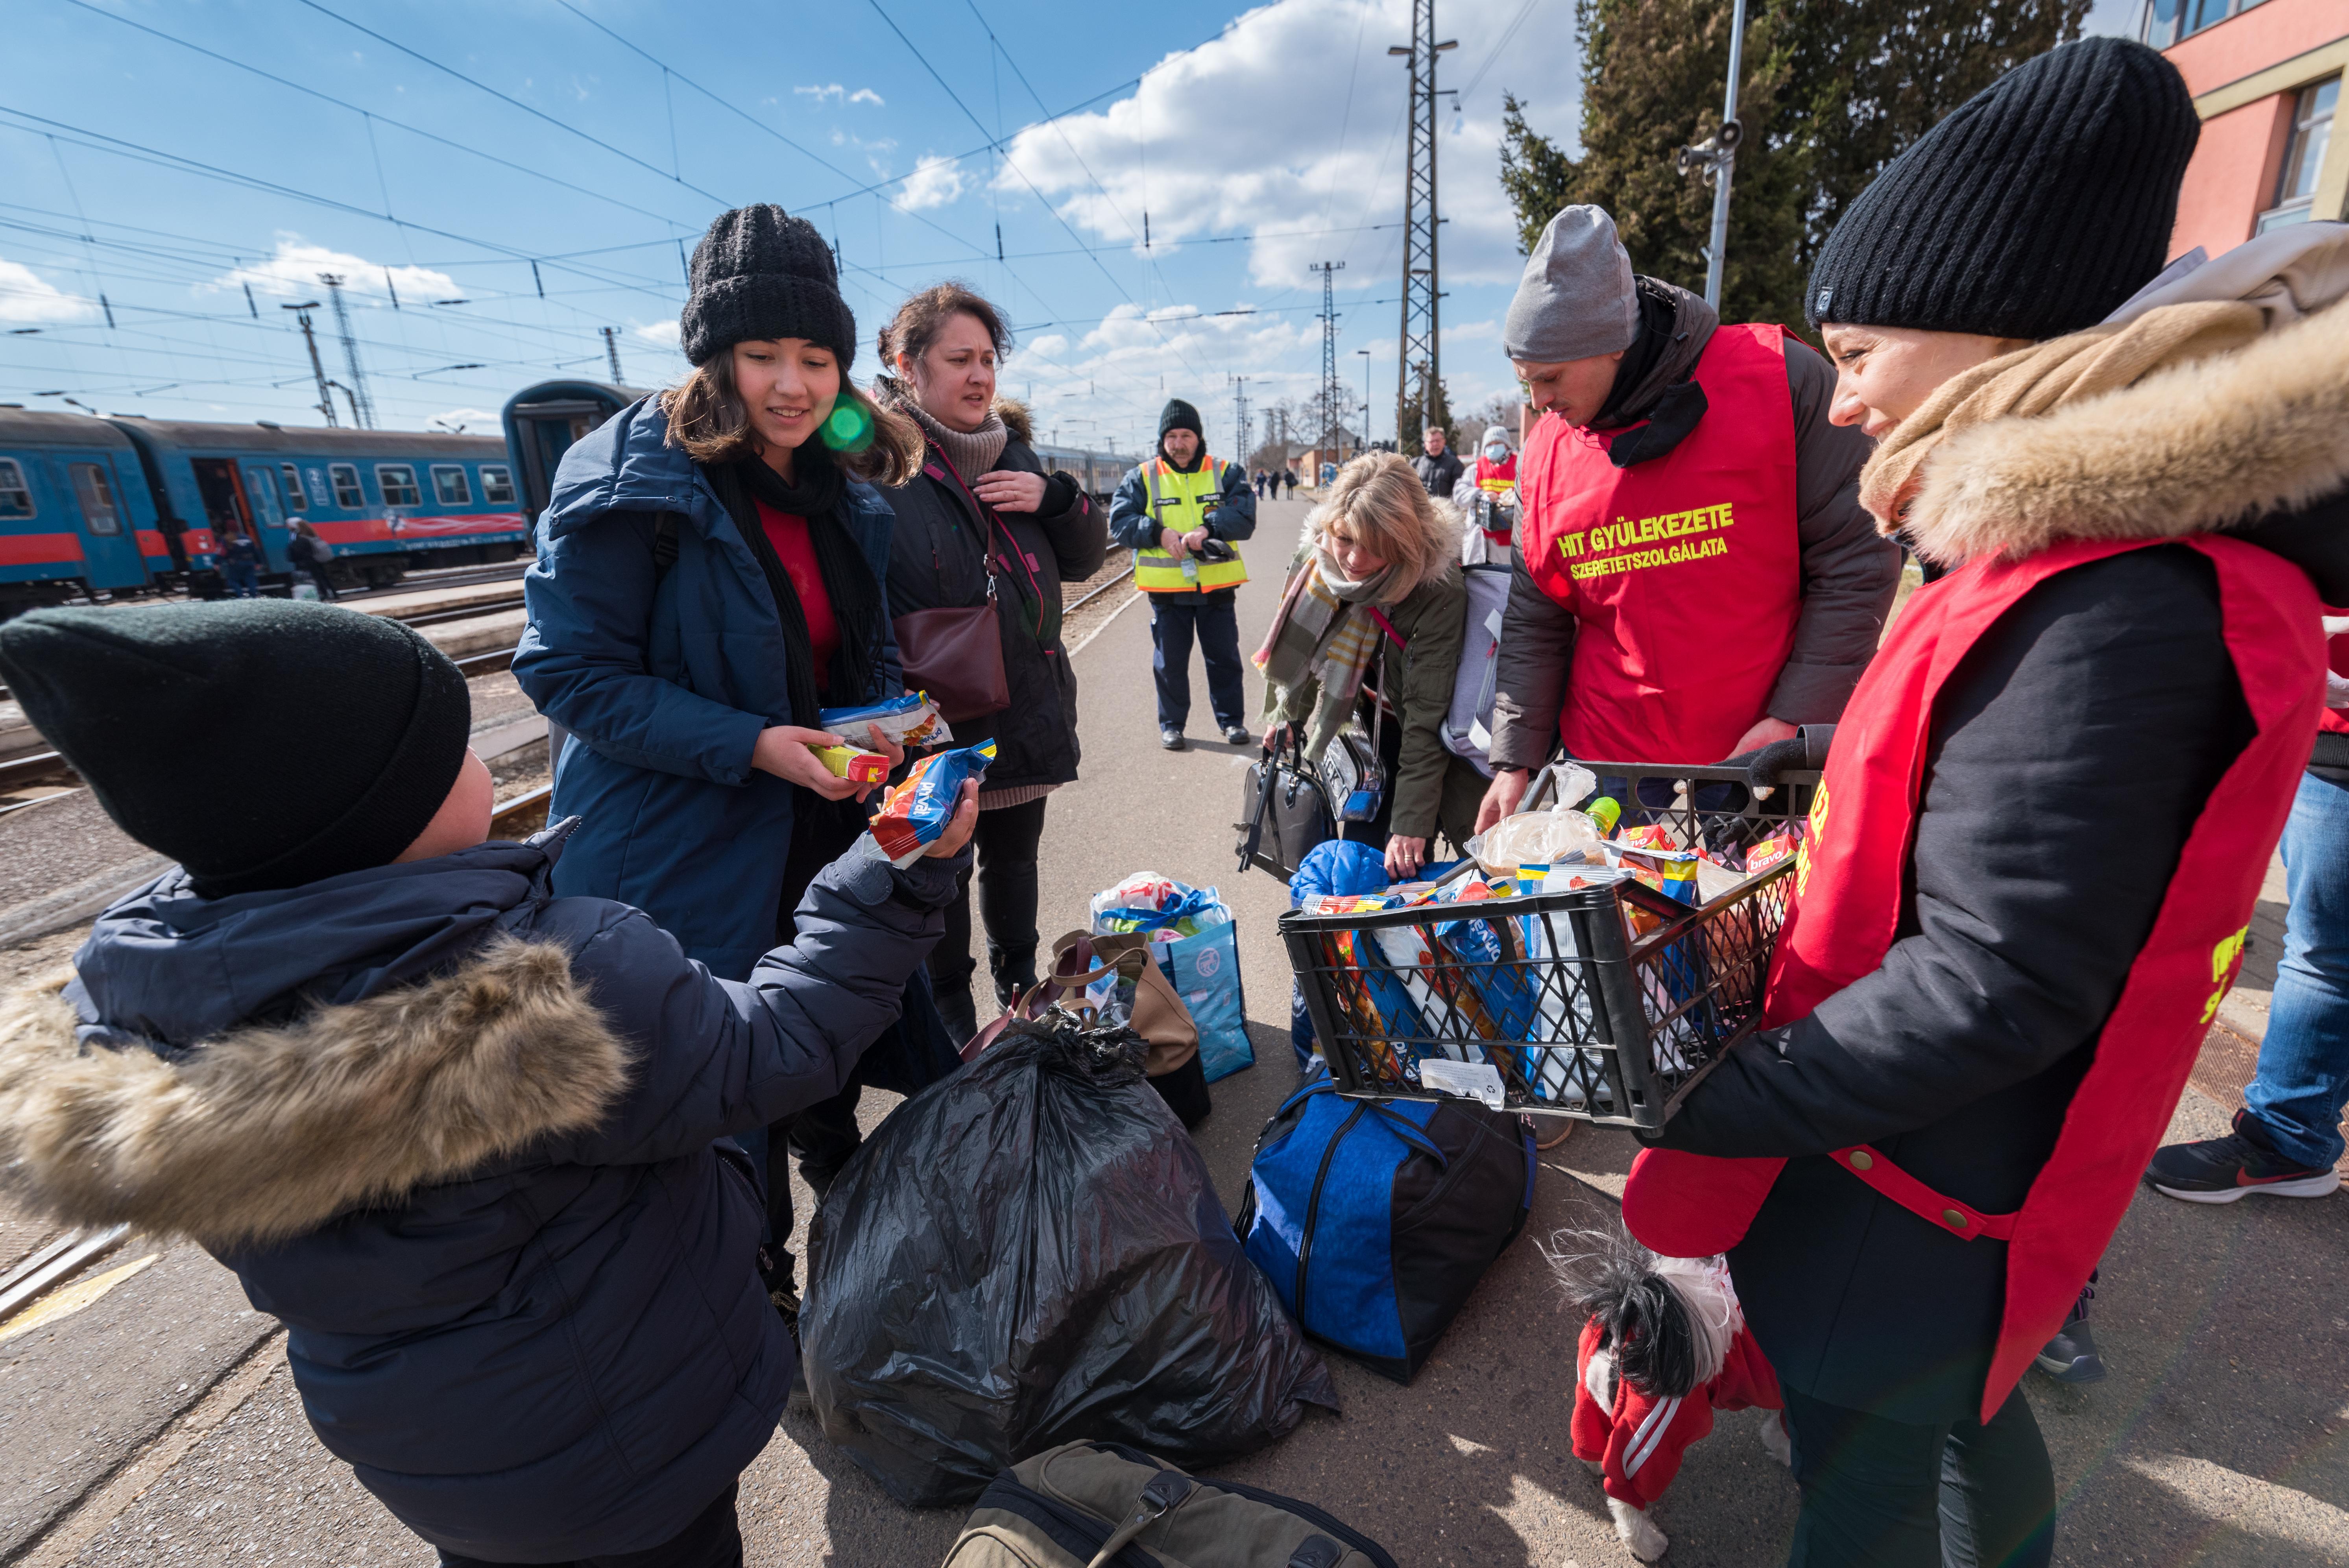 Ukrainische Flüchtlingsfamilien werden bei ihrer Ankunft am Bahnhof in Záhony, Ungarn, von Helfenden unterstützt. Foto: LWB/Albin Hillert